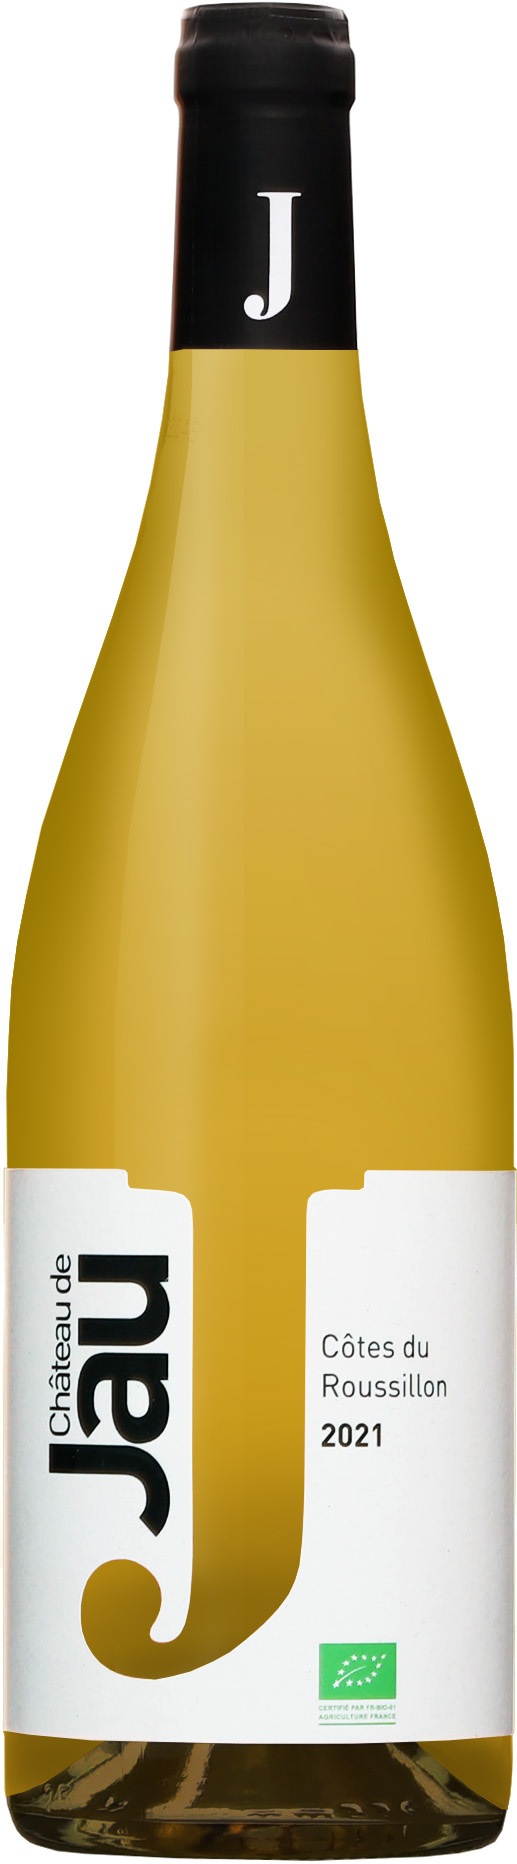 Chateau de Jau Côtes du Roussillon Blanc 2021 13% 0,75l (čistá flaša)